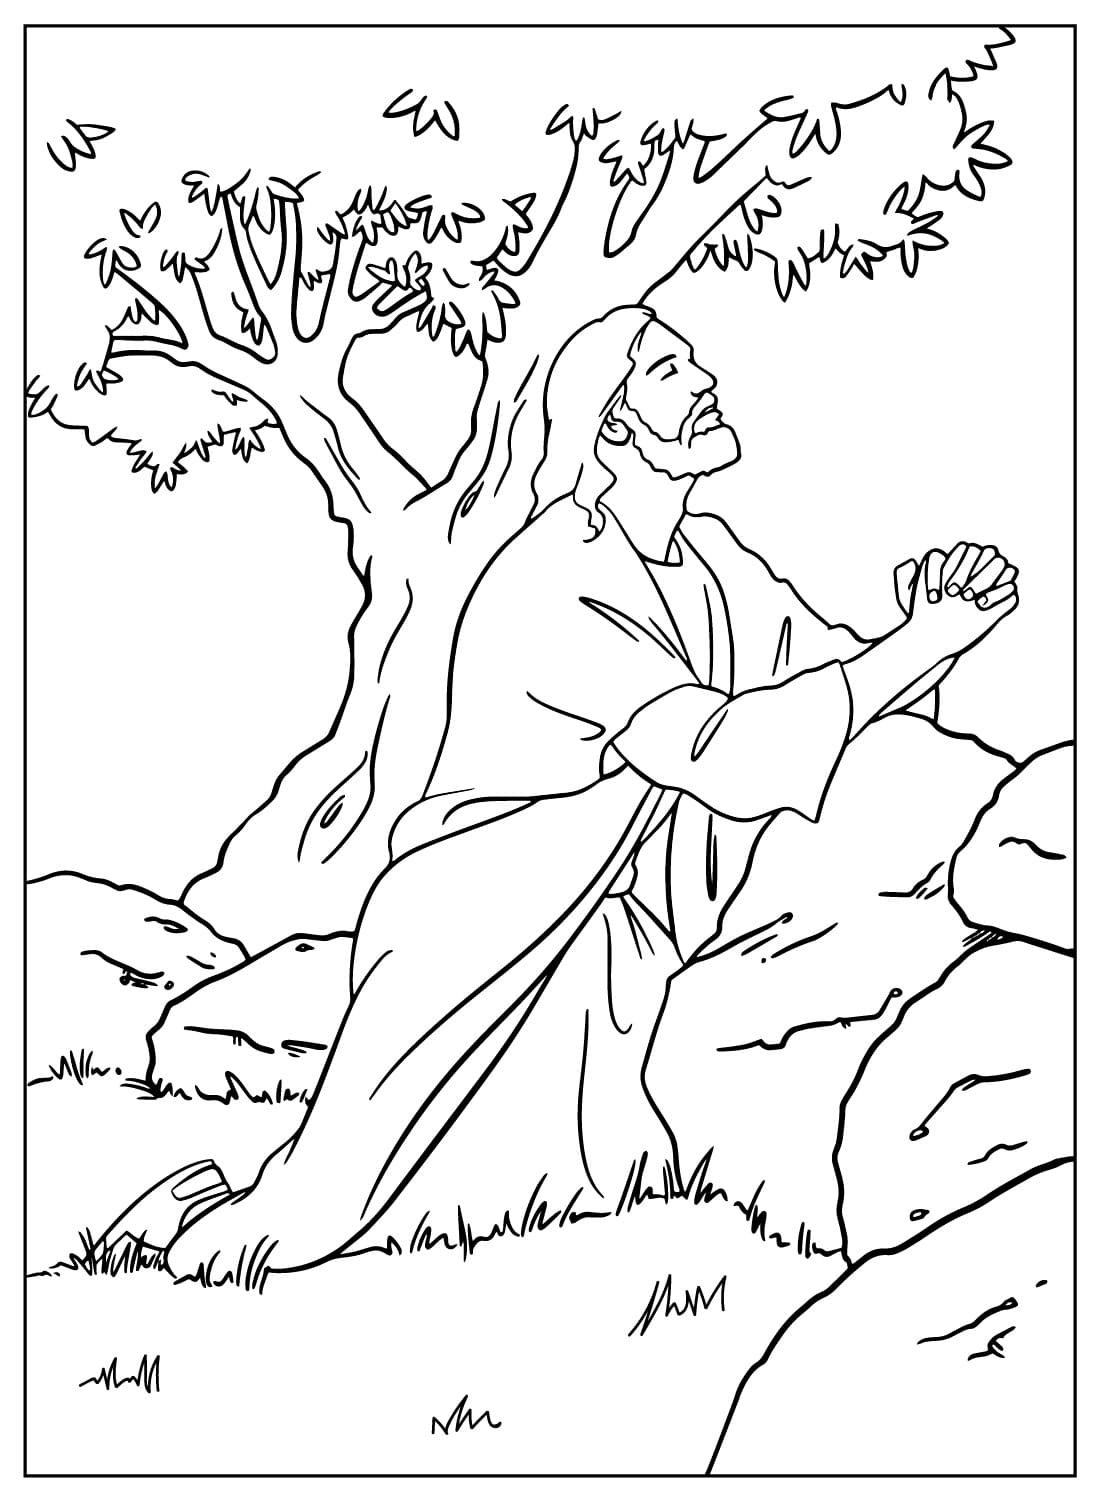 Jezus bidt in de hof van Getsemane